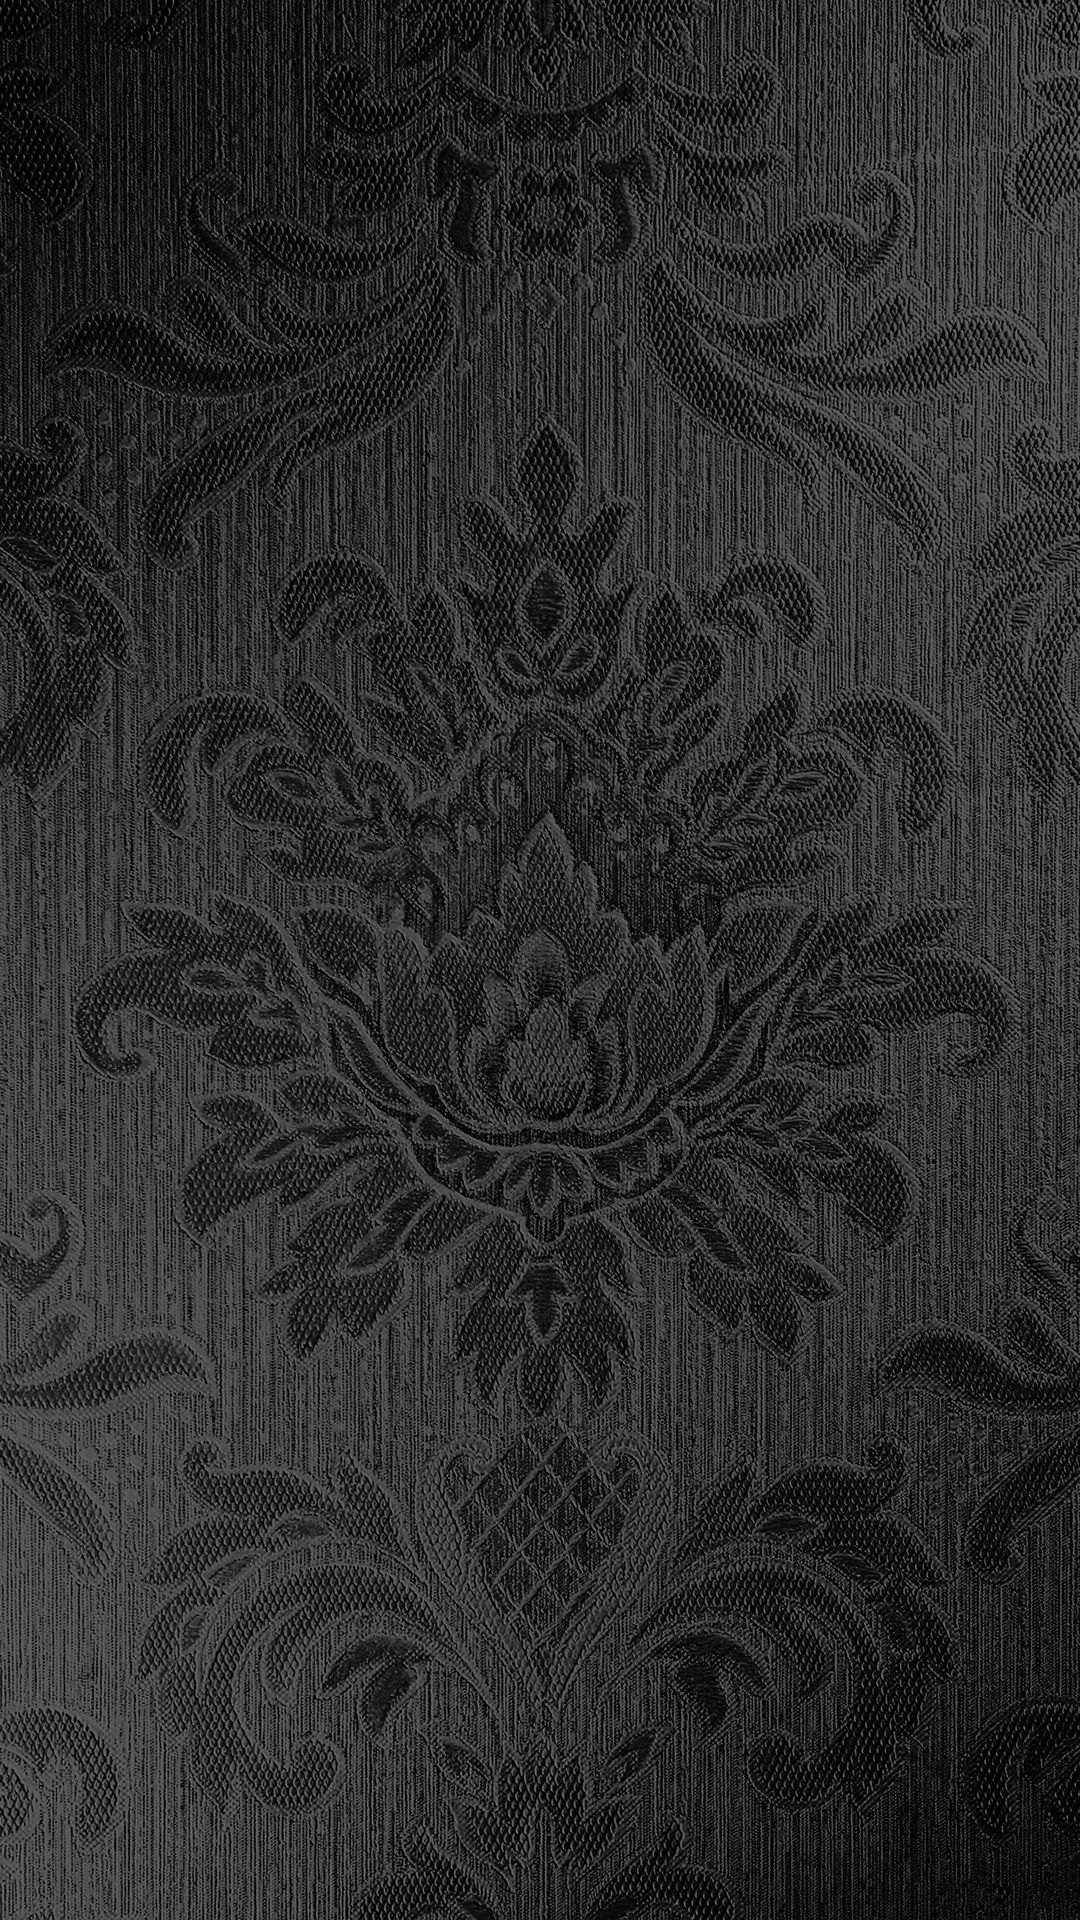 Vintage Art Dark Texture Pattern IPhone 6 Wallpaper Download. IPhone Wallpaper, IPad Wallpaper One St. Dark Wallpaper Iphone, Textures Patterns, Goth Wallpaper